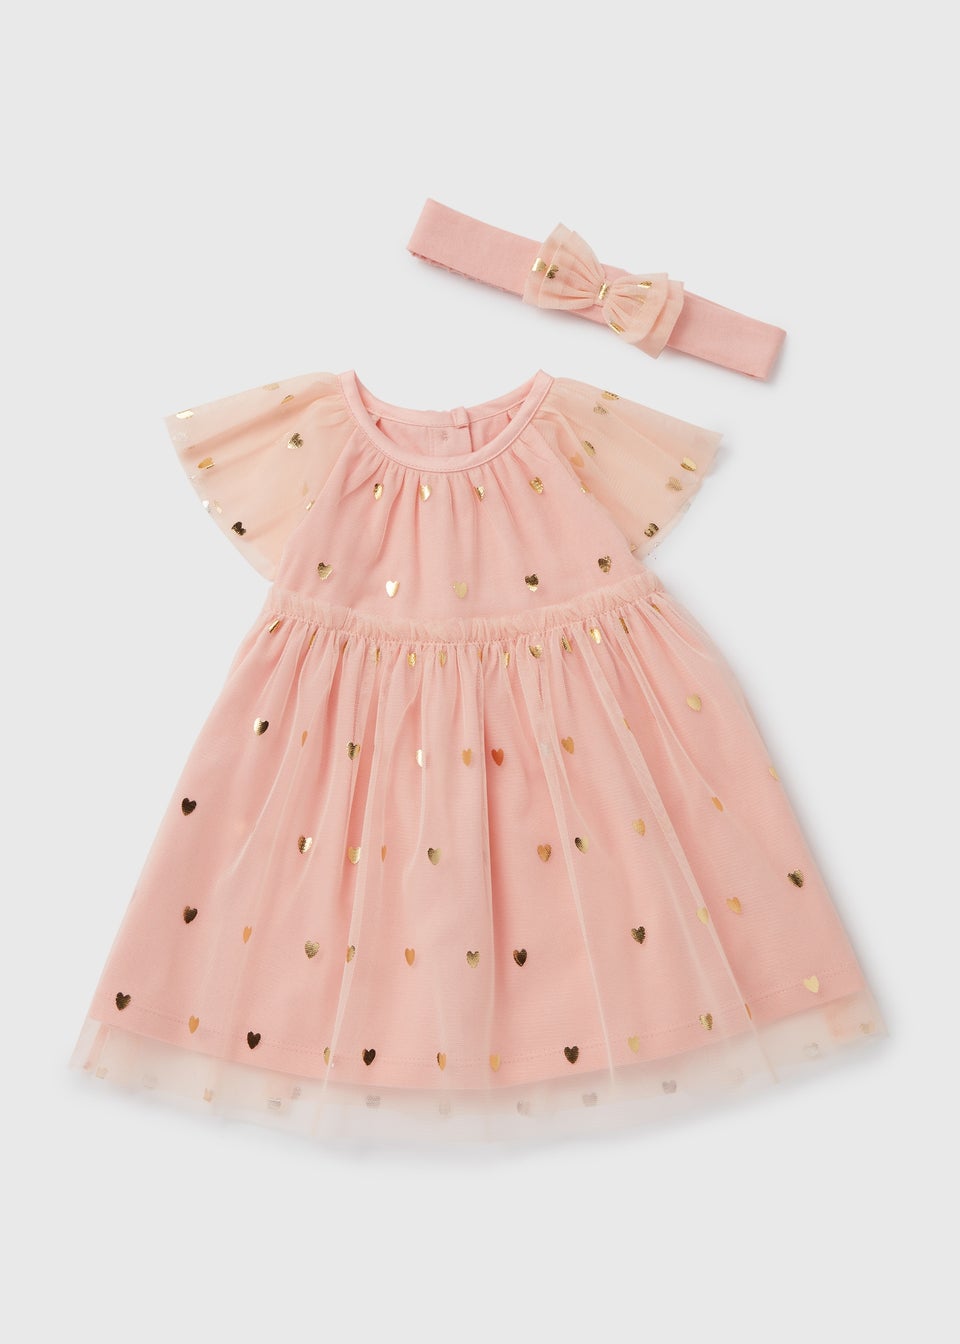 Girls Pink Chiffon Occasion Dress And Headband Set (Newborn-18mths)